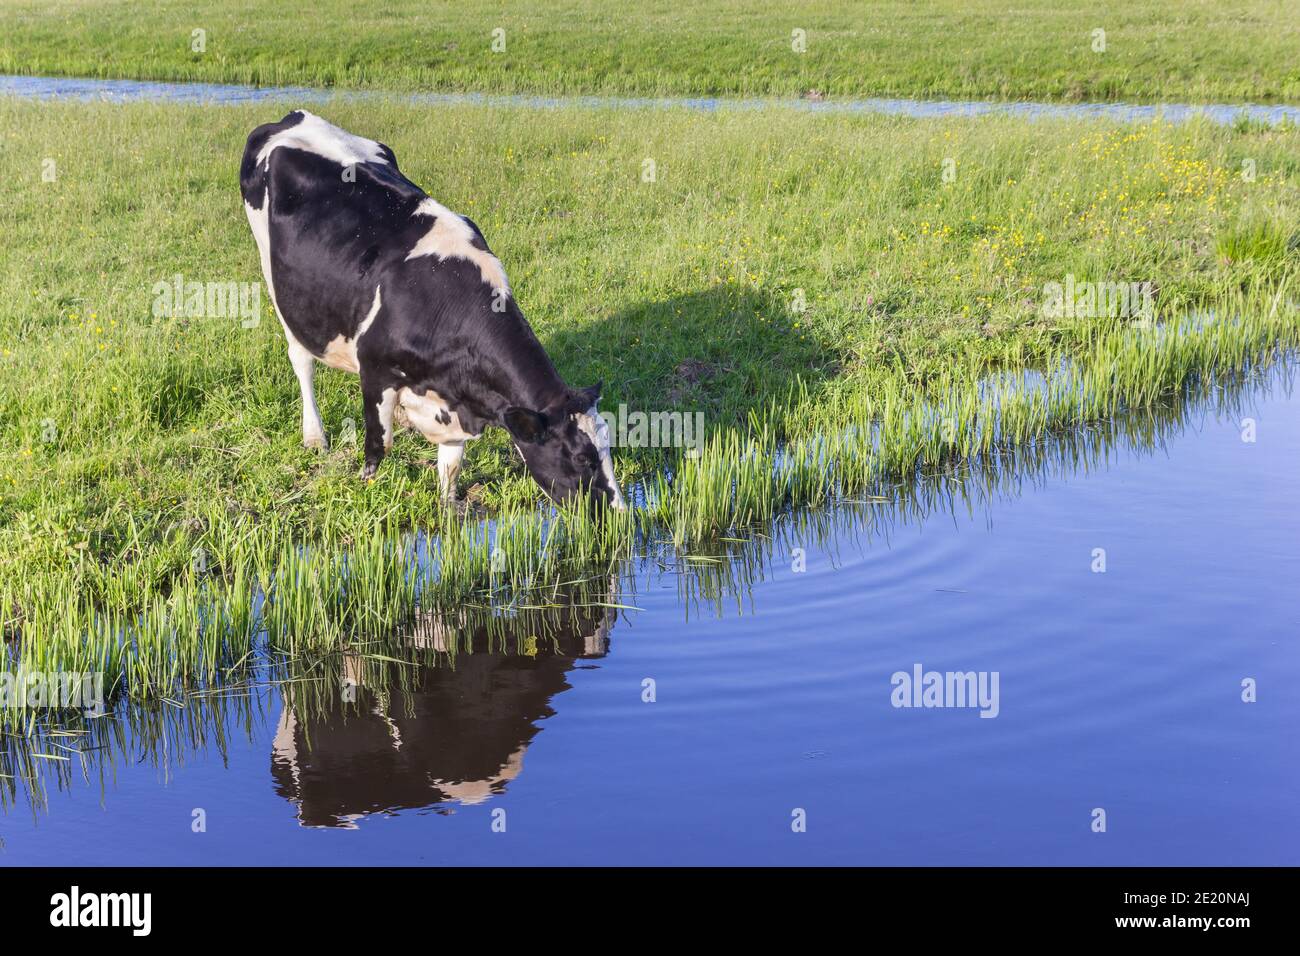 Typische holländische holstein Kuh trinken aus einem kleinen Fluss in Groningen, Niederlande Stockfoto